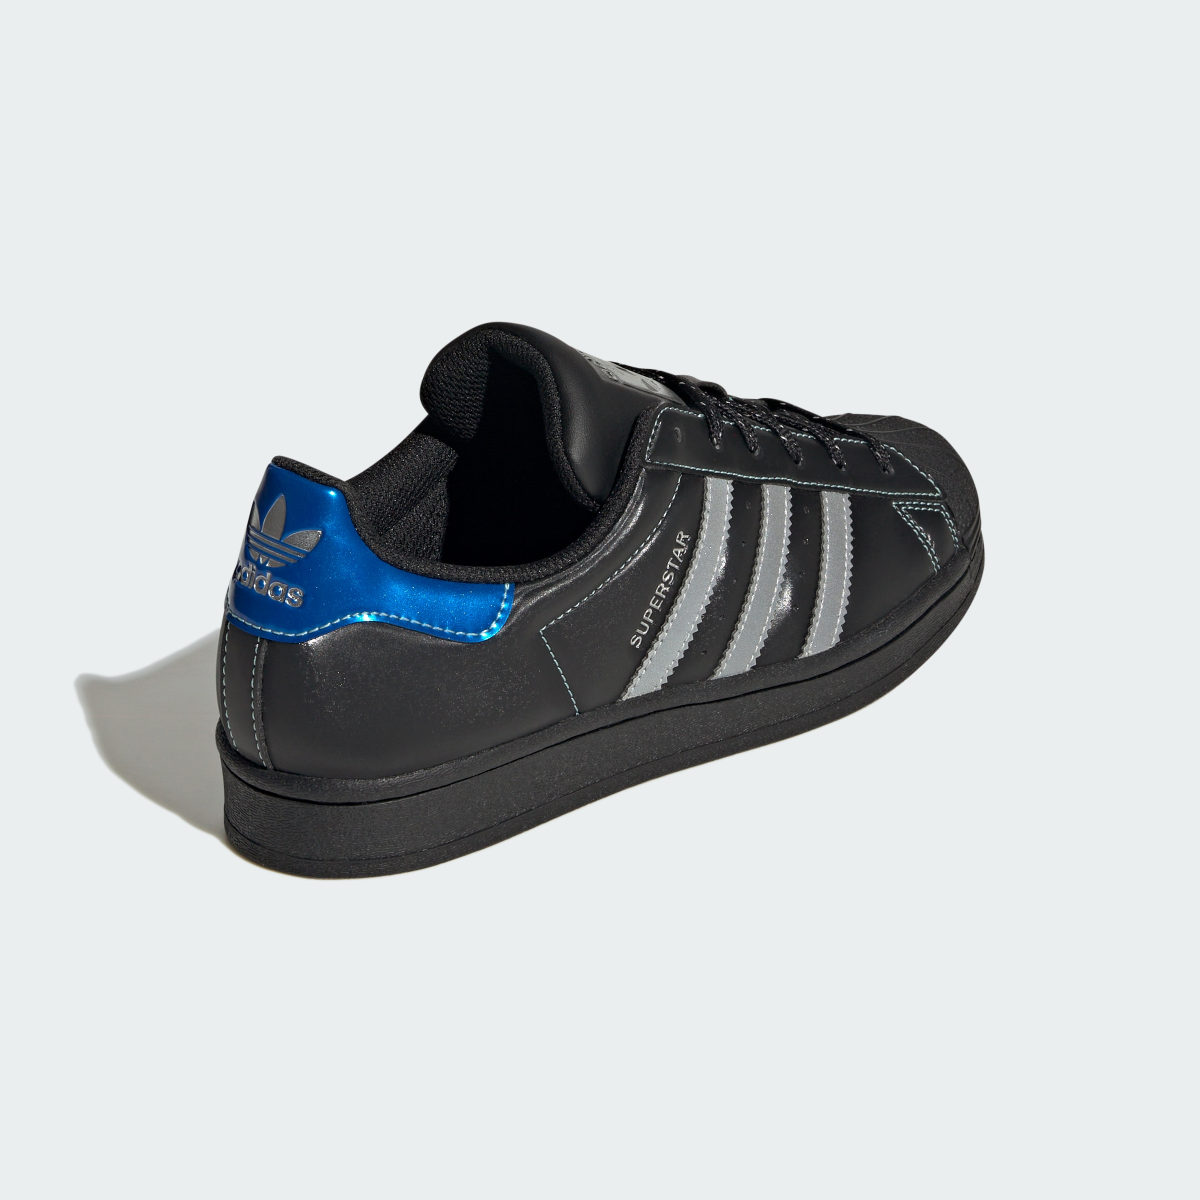 Adidas Superstar Ayakkabı. 8